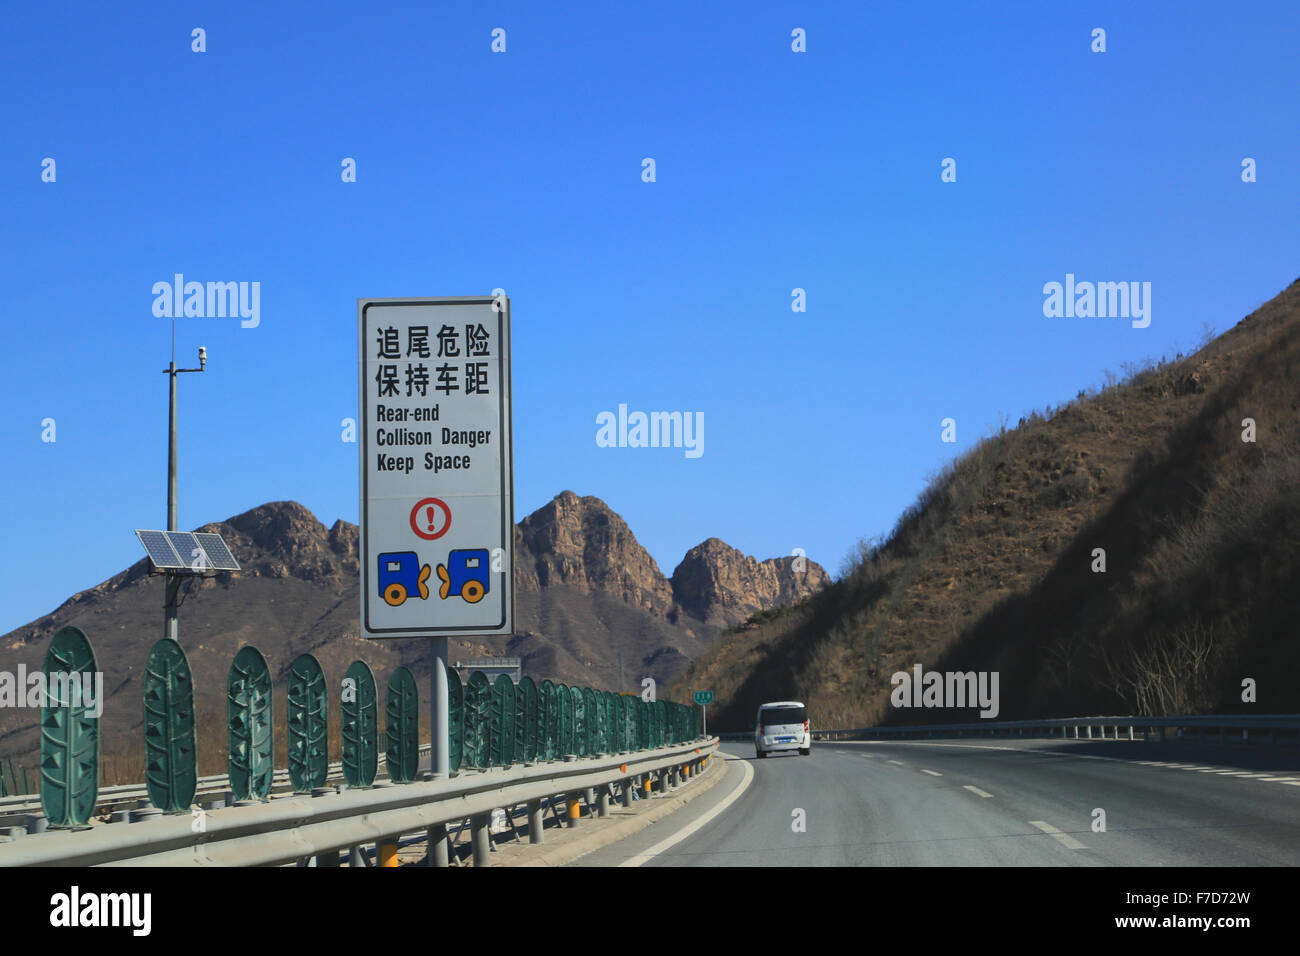 Lustigen chinesischen Straßenschild: Hinterteil Kollision Gefahr halten Sie Raum.  Autobahn G45 Richtung Norden in Richtung große Mauer. Stockfoto